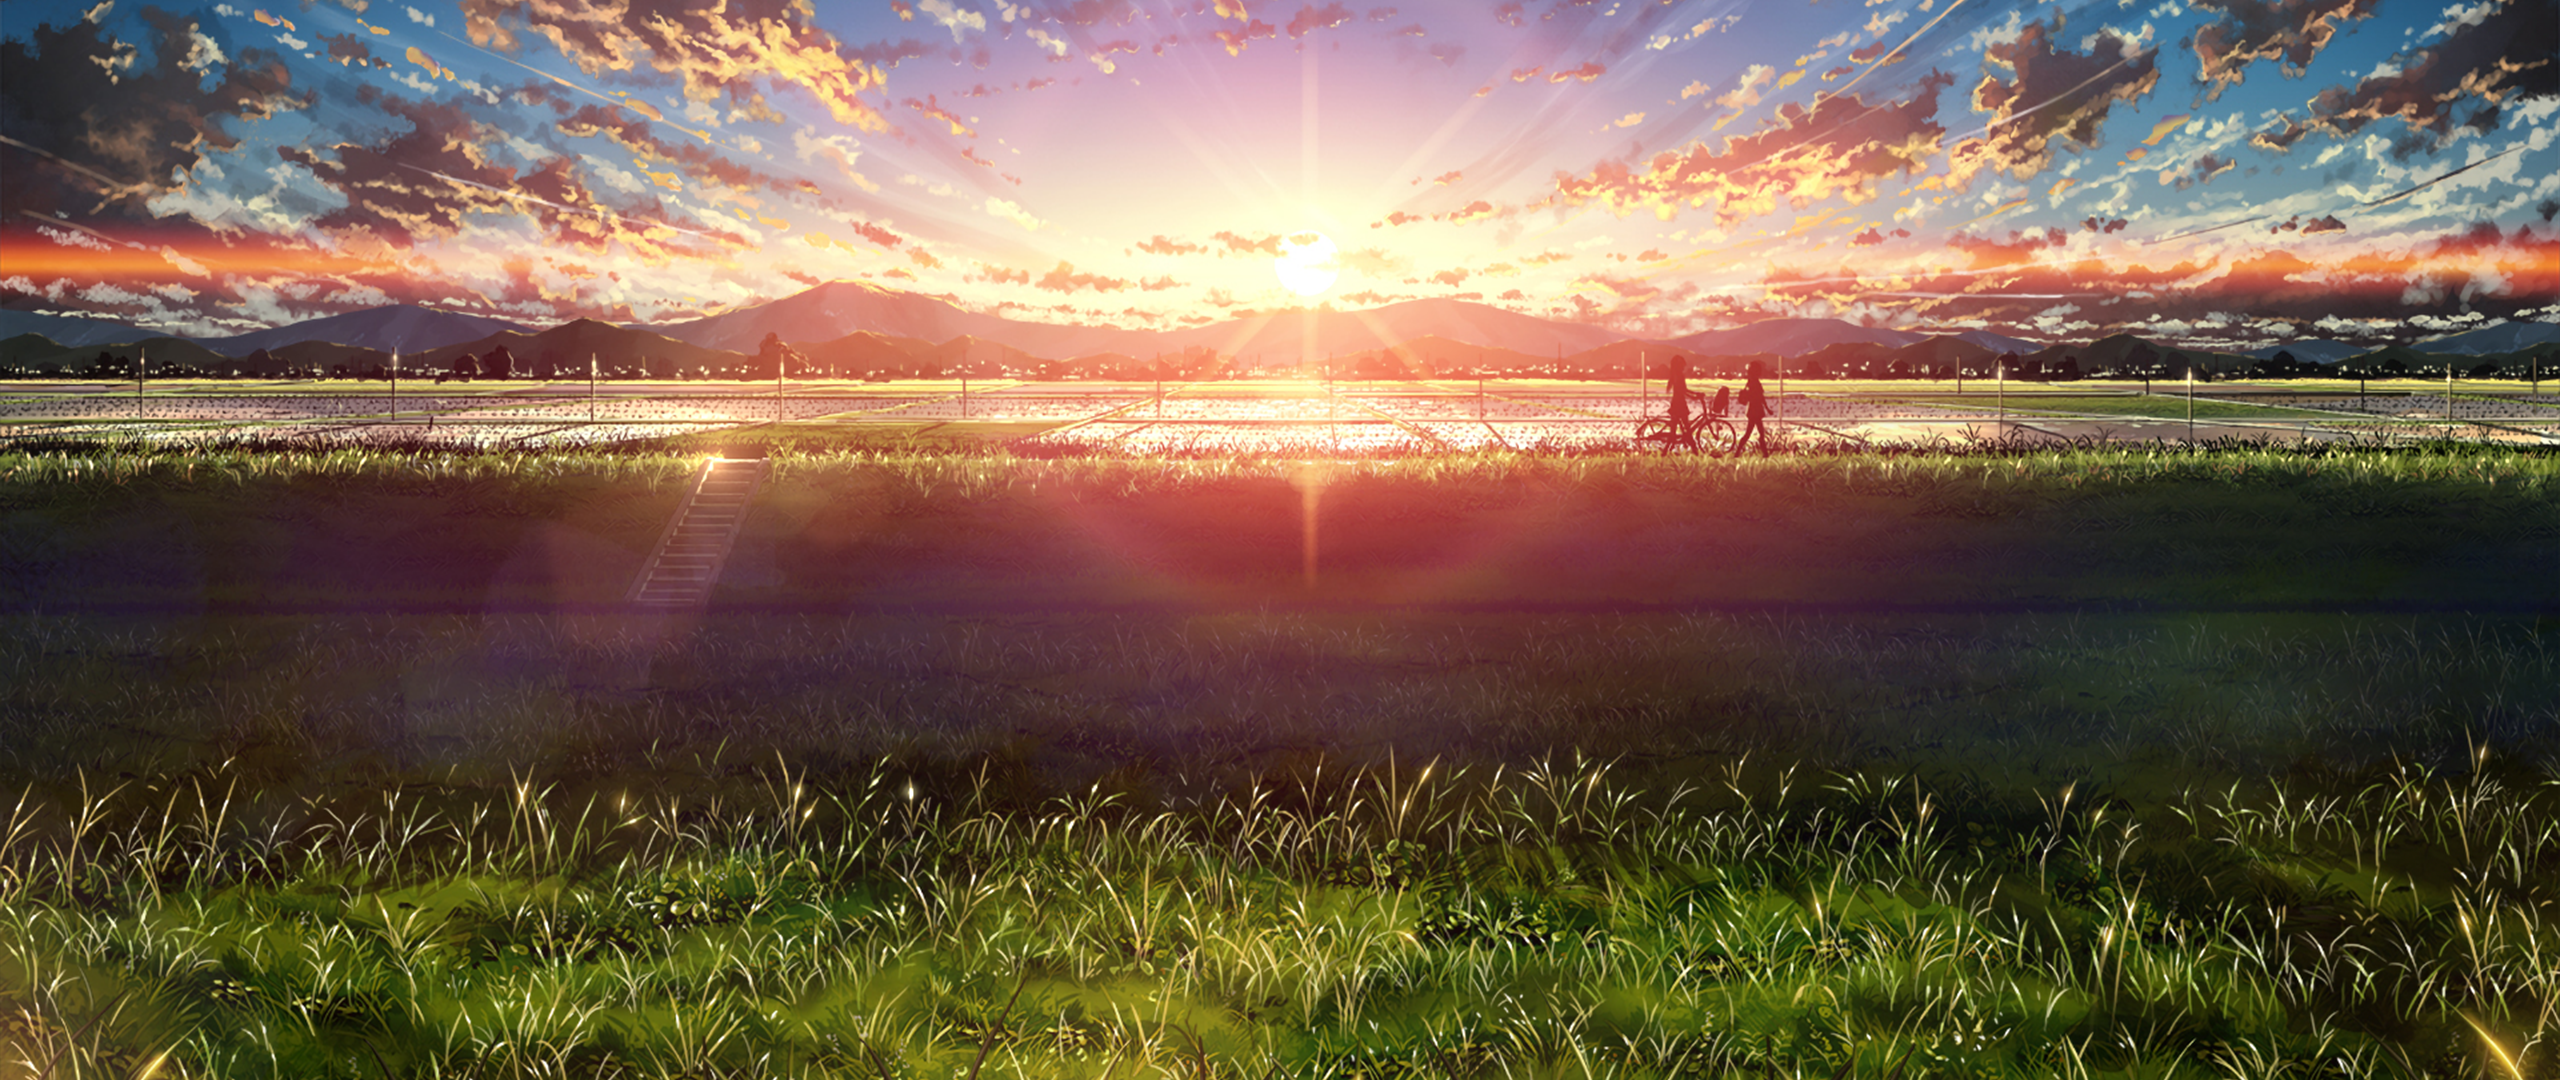 ultra wide japan anime sky sunlight Gallery HD Wallpaper